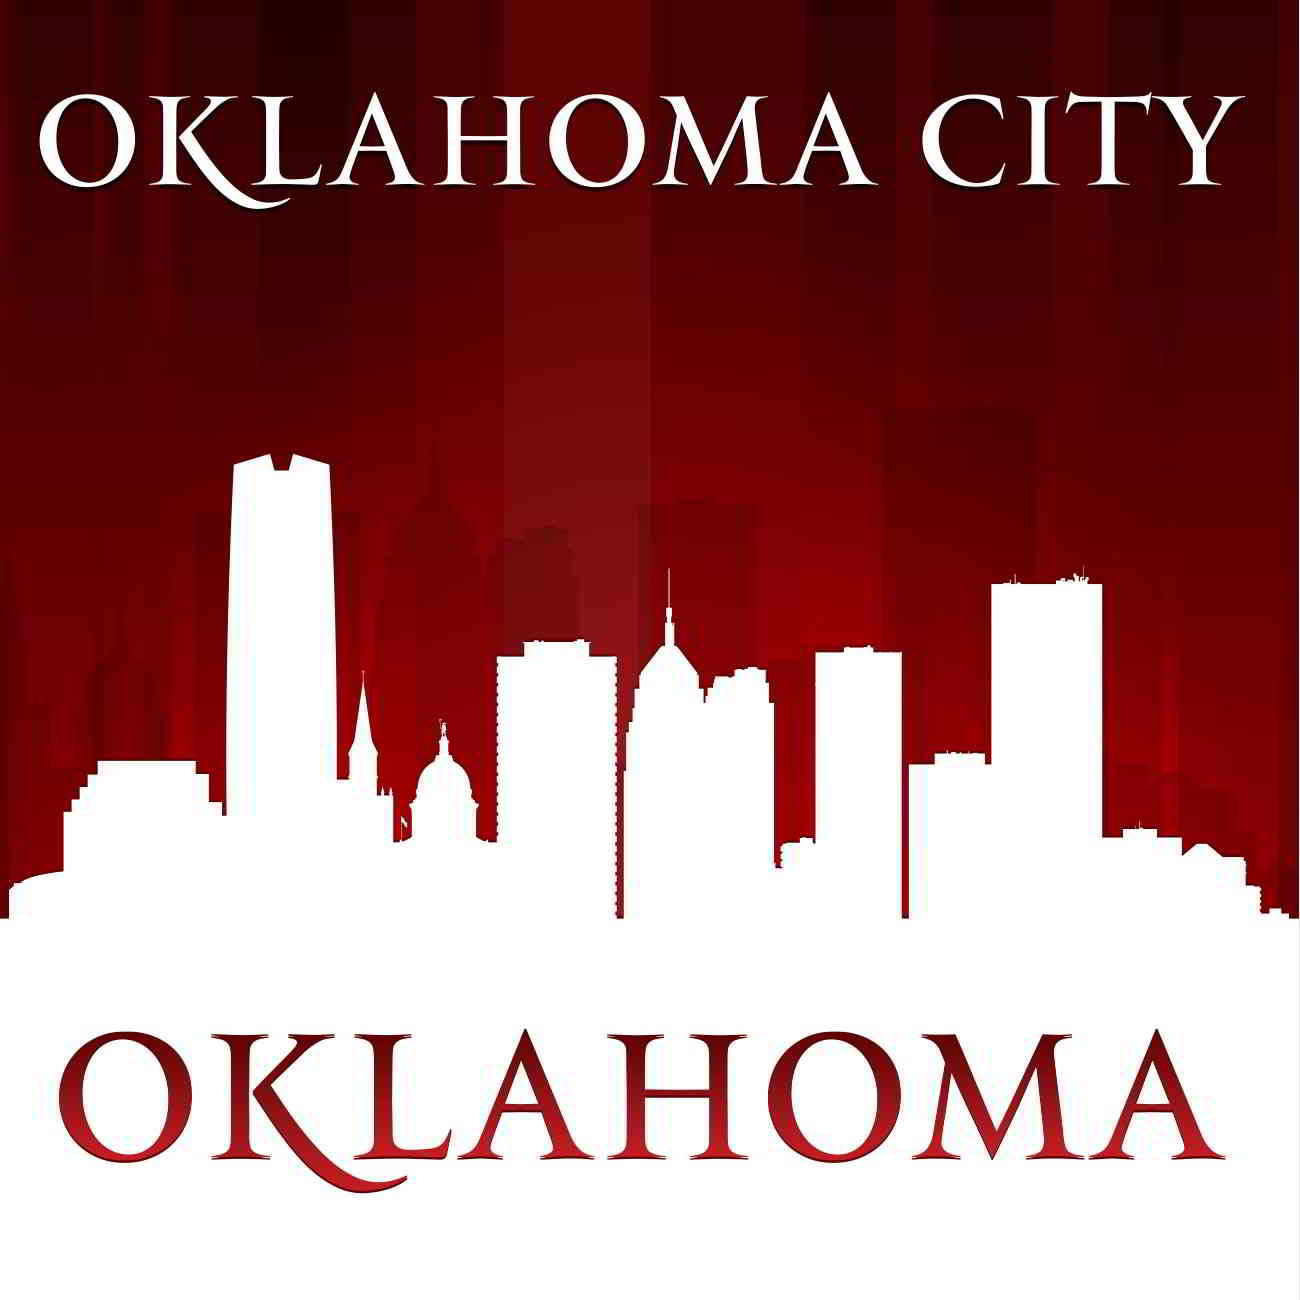 Oklahoma City city scape